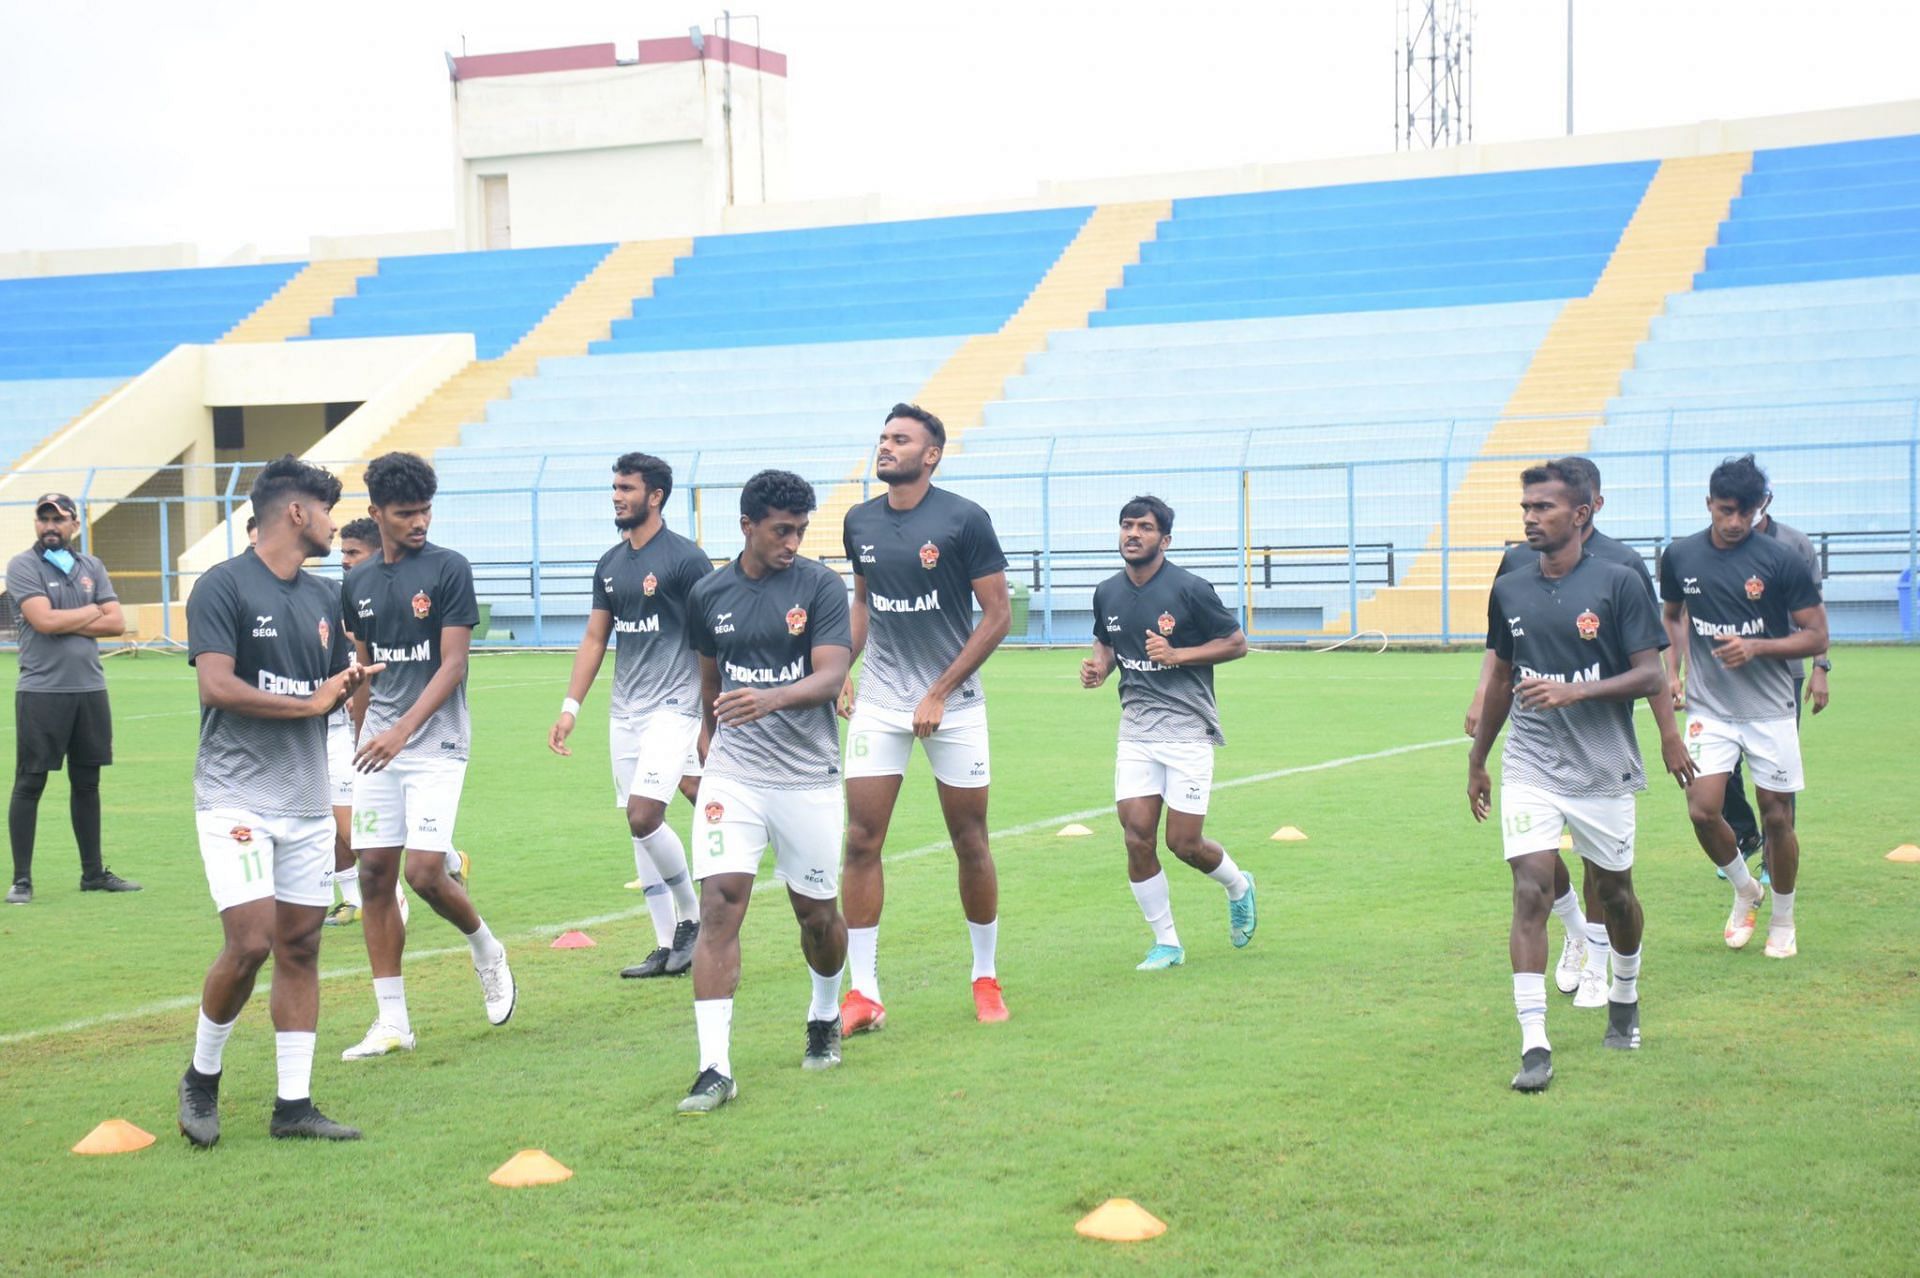 Gokulam Kerala players training. (Image Courtesy: Twitter/GokulamKeralaFC)